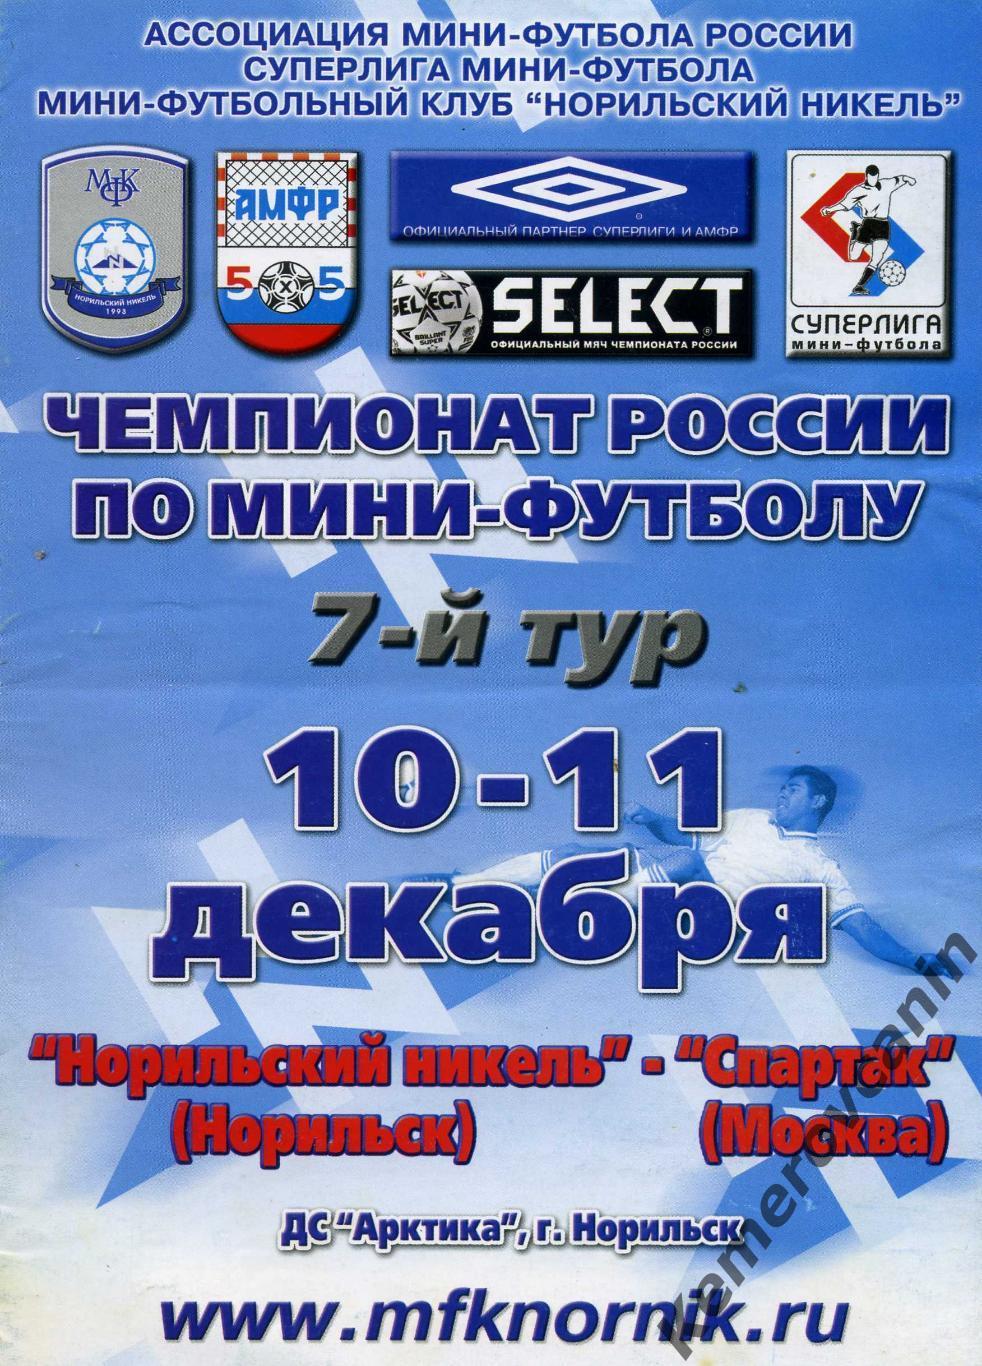 Норильский Никель Норильск - Спартак Москва 10-11.12.2004 Суперлига 2004/2005